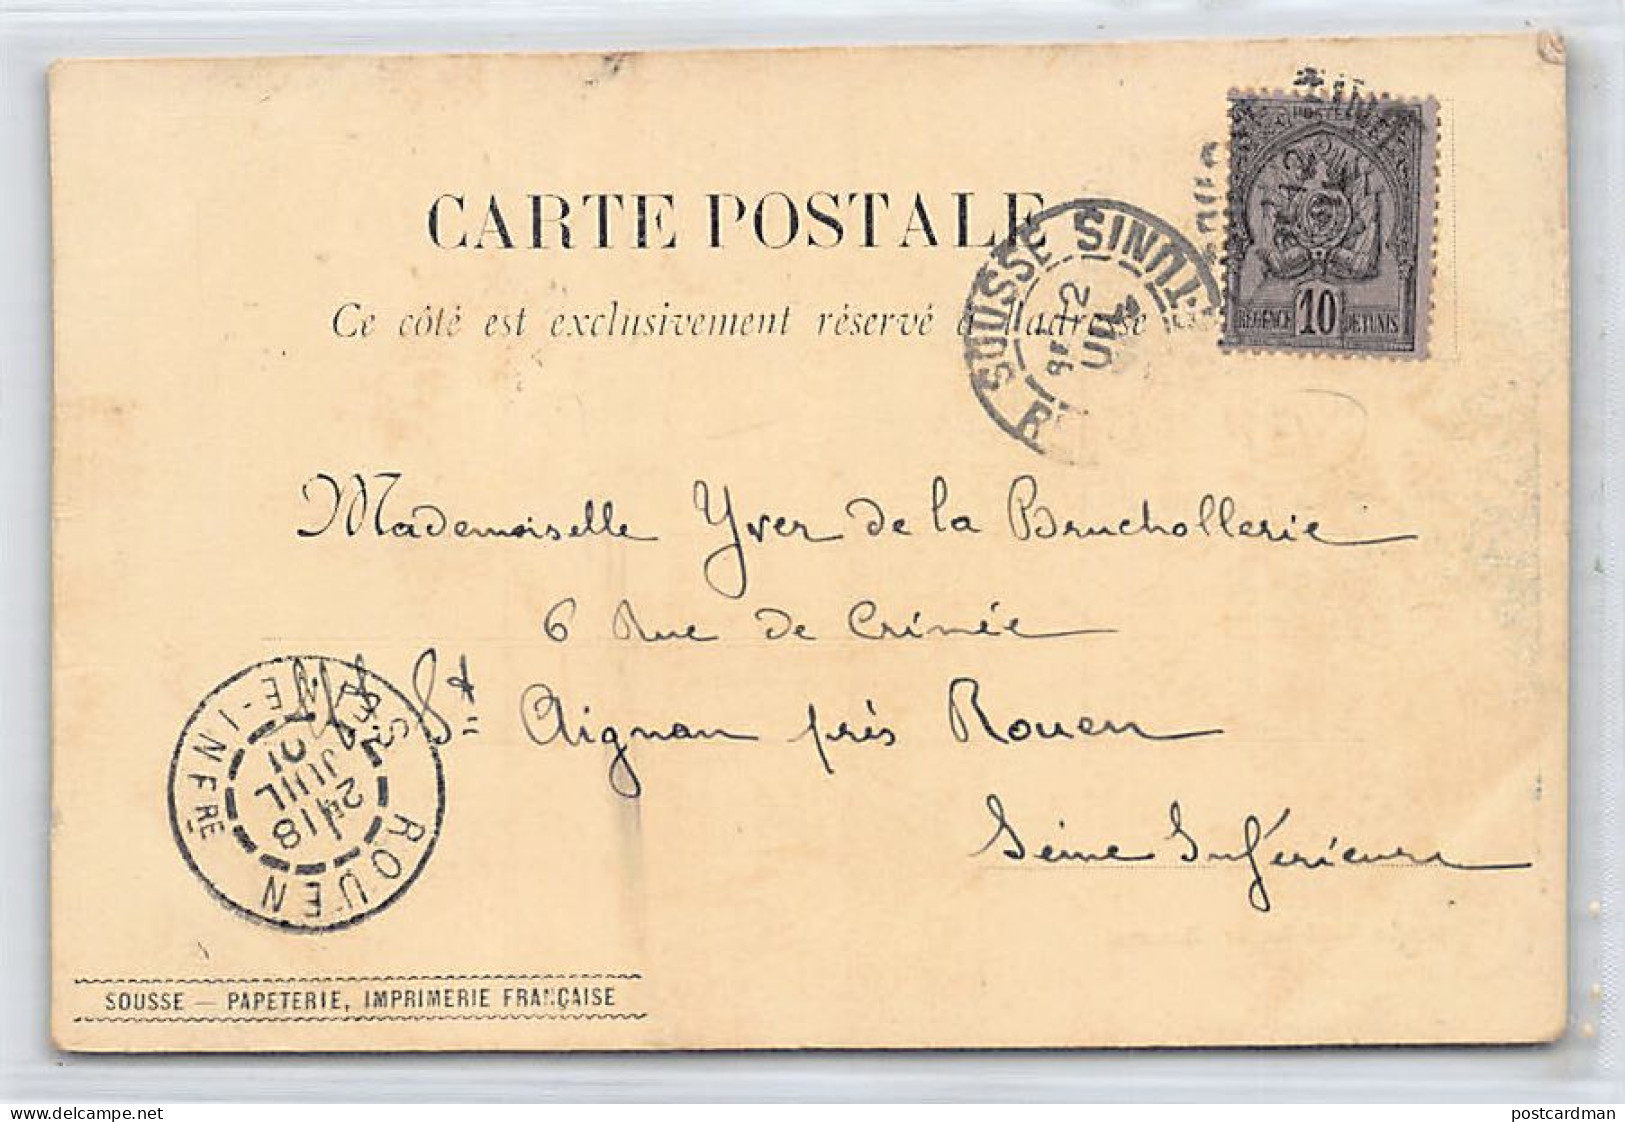 SOUSSE - Mosquée Sidi-Amar - CARTE PRÉCURSEUR Année 1901 - Ed. Papeterie, Imprimerie Française  - Tunisia